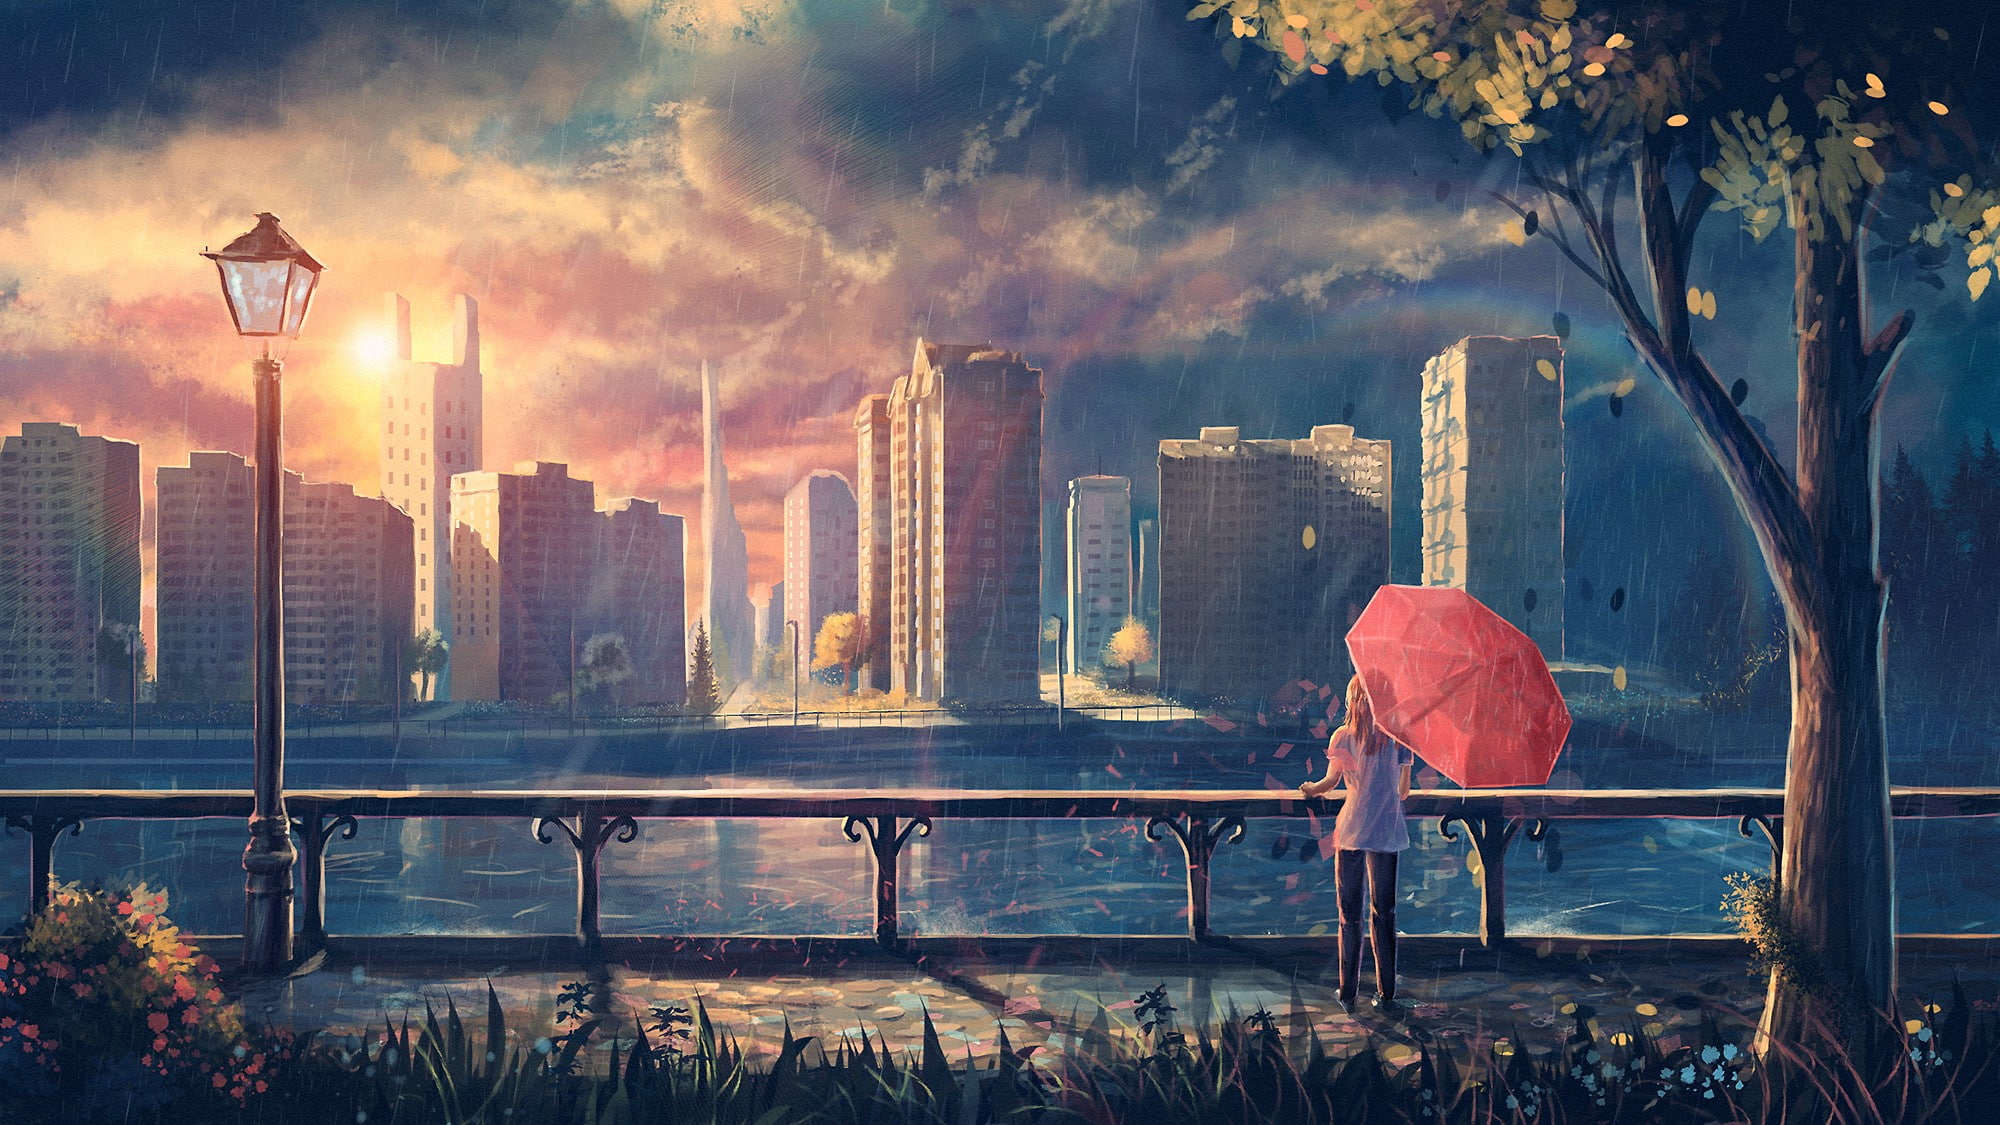 anime girls, umbrella, artwork, cityscape, park, fantasy art